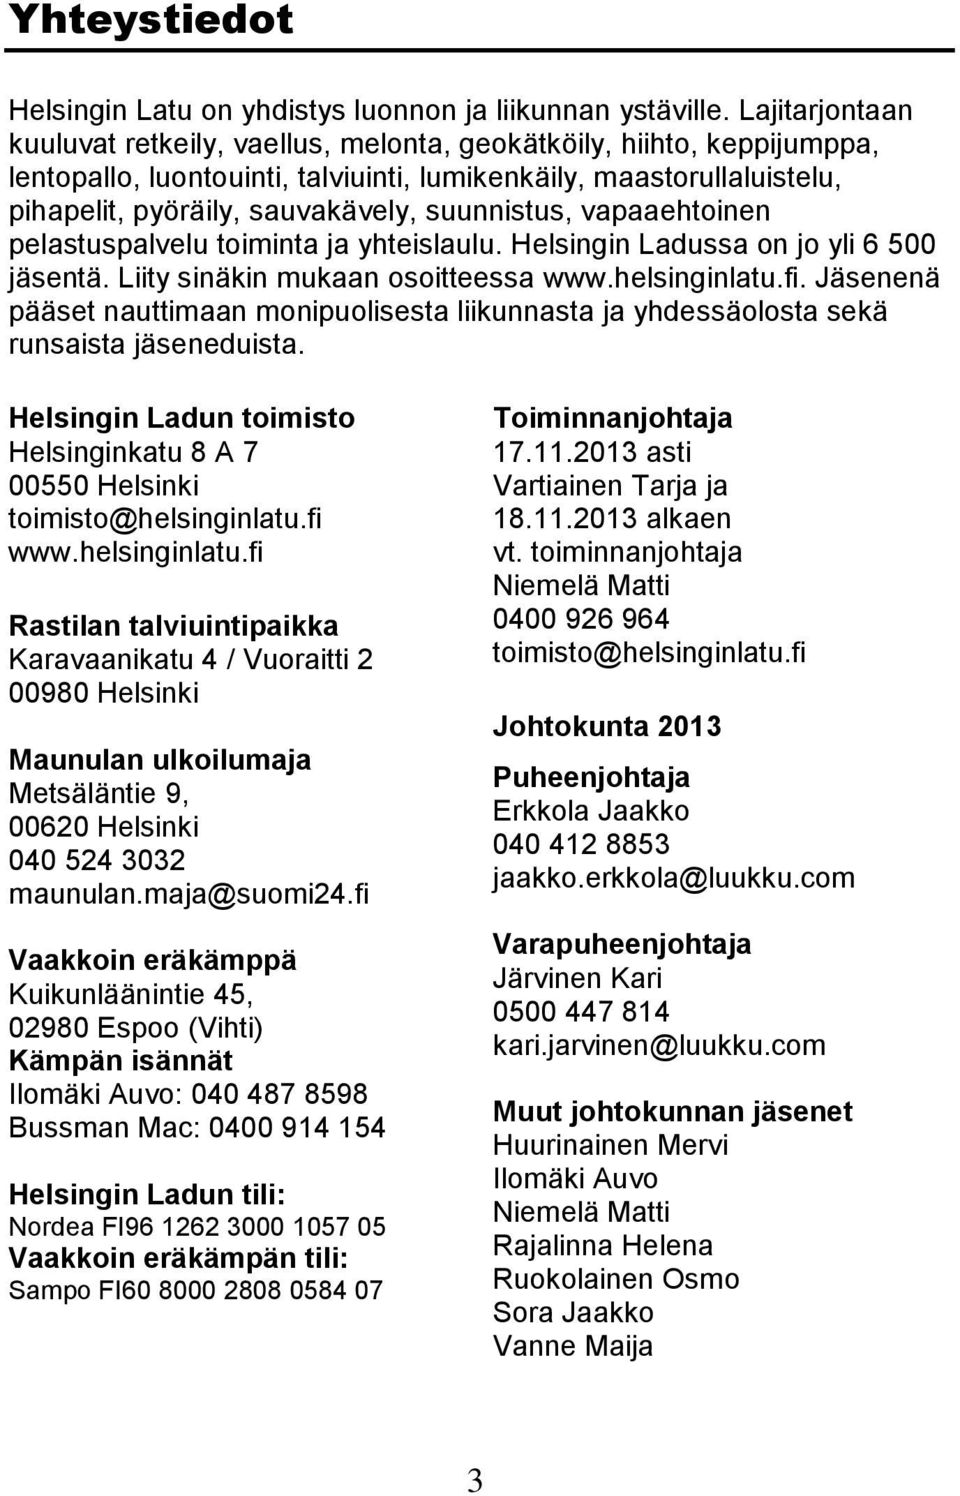 suunnistus, vapaaehtoinen pelastuspalvelu toiminta ja yhteislaulu. Helsingin Ladussa on jo yli 6 500 jäsentä. Liity sinäkin mukaan osoitteessa www.helsinginlatu.fi.